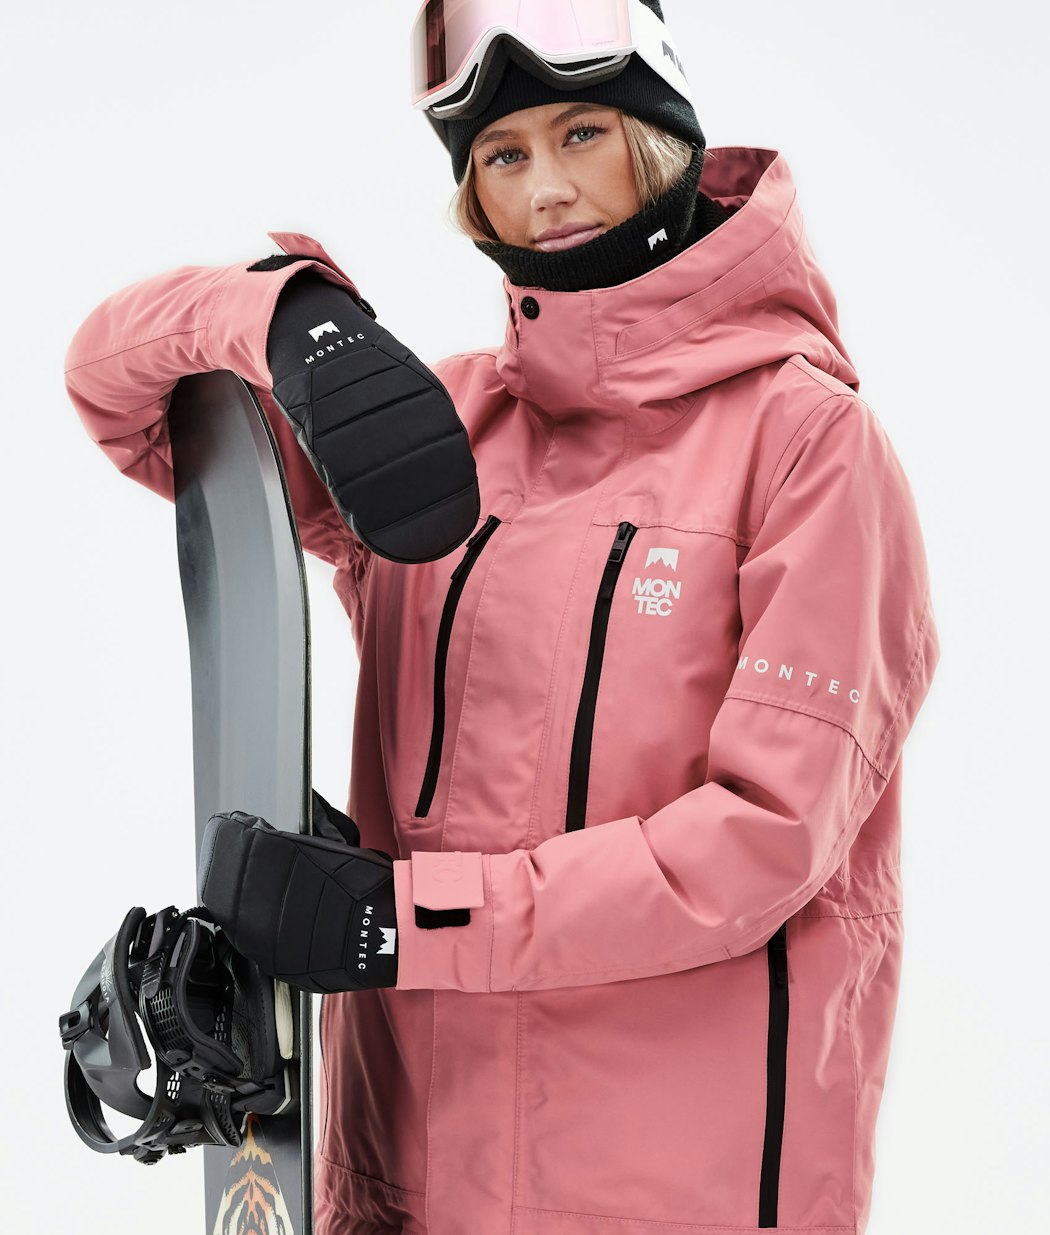 Fawk W 2021 Veste Snowboard Femme Pink Renewed